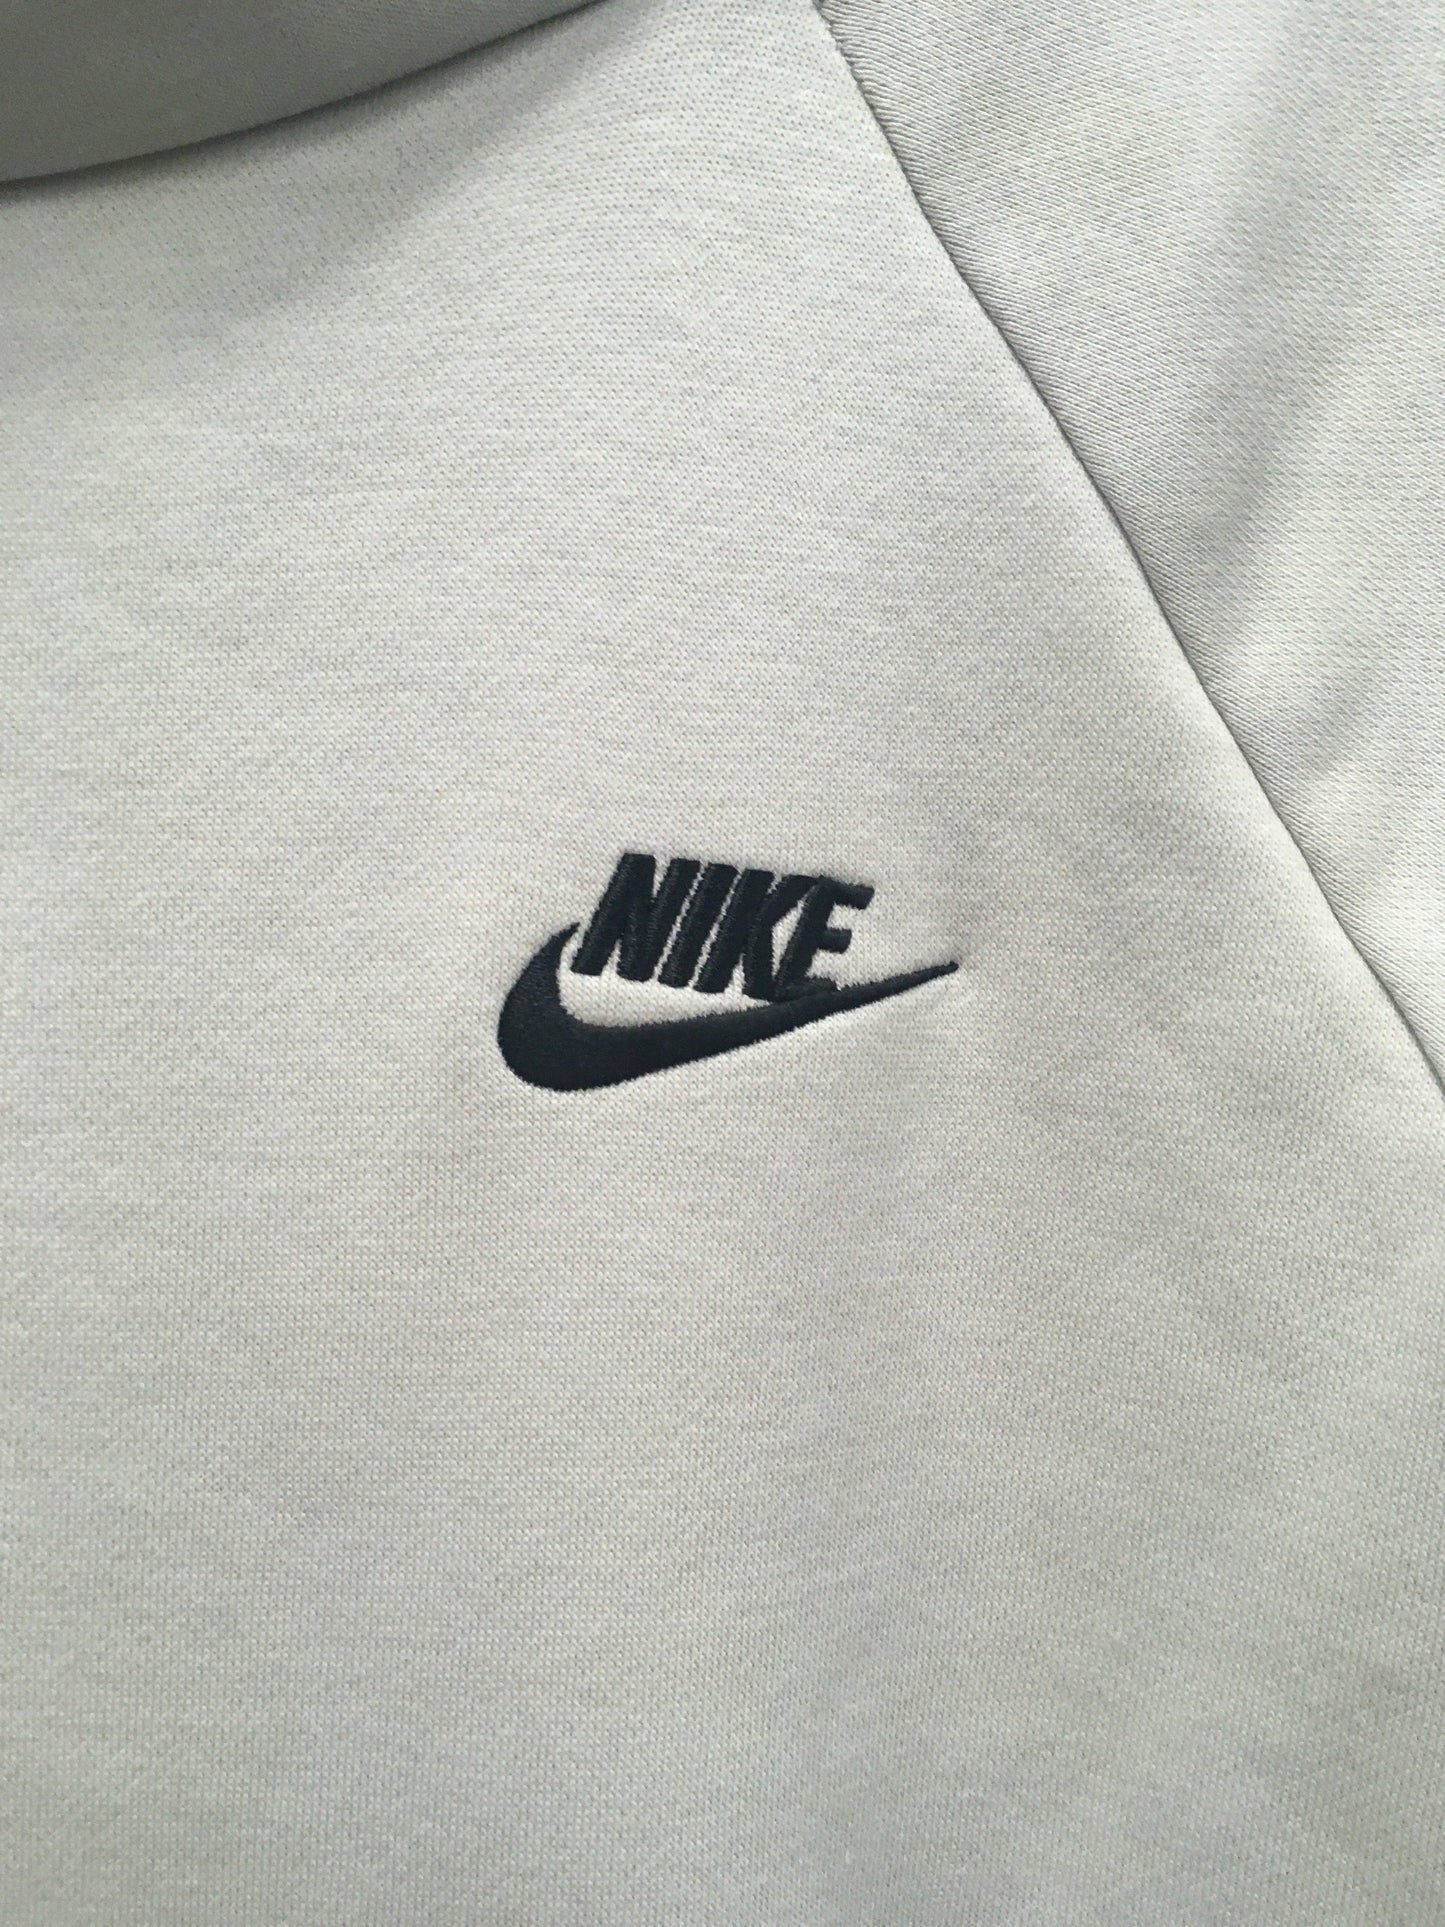 Grey Sweatshirt Hoodie Nike, Size L